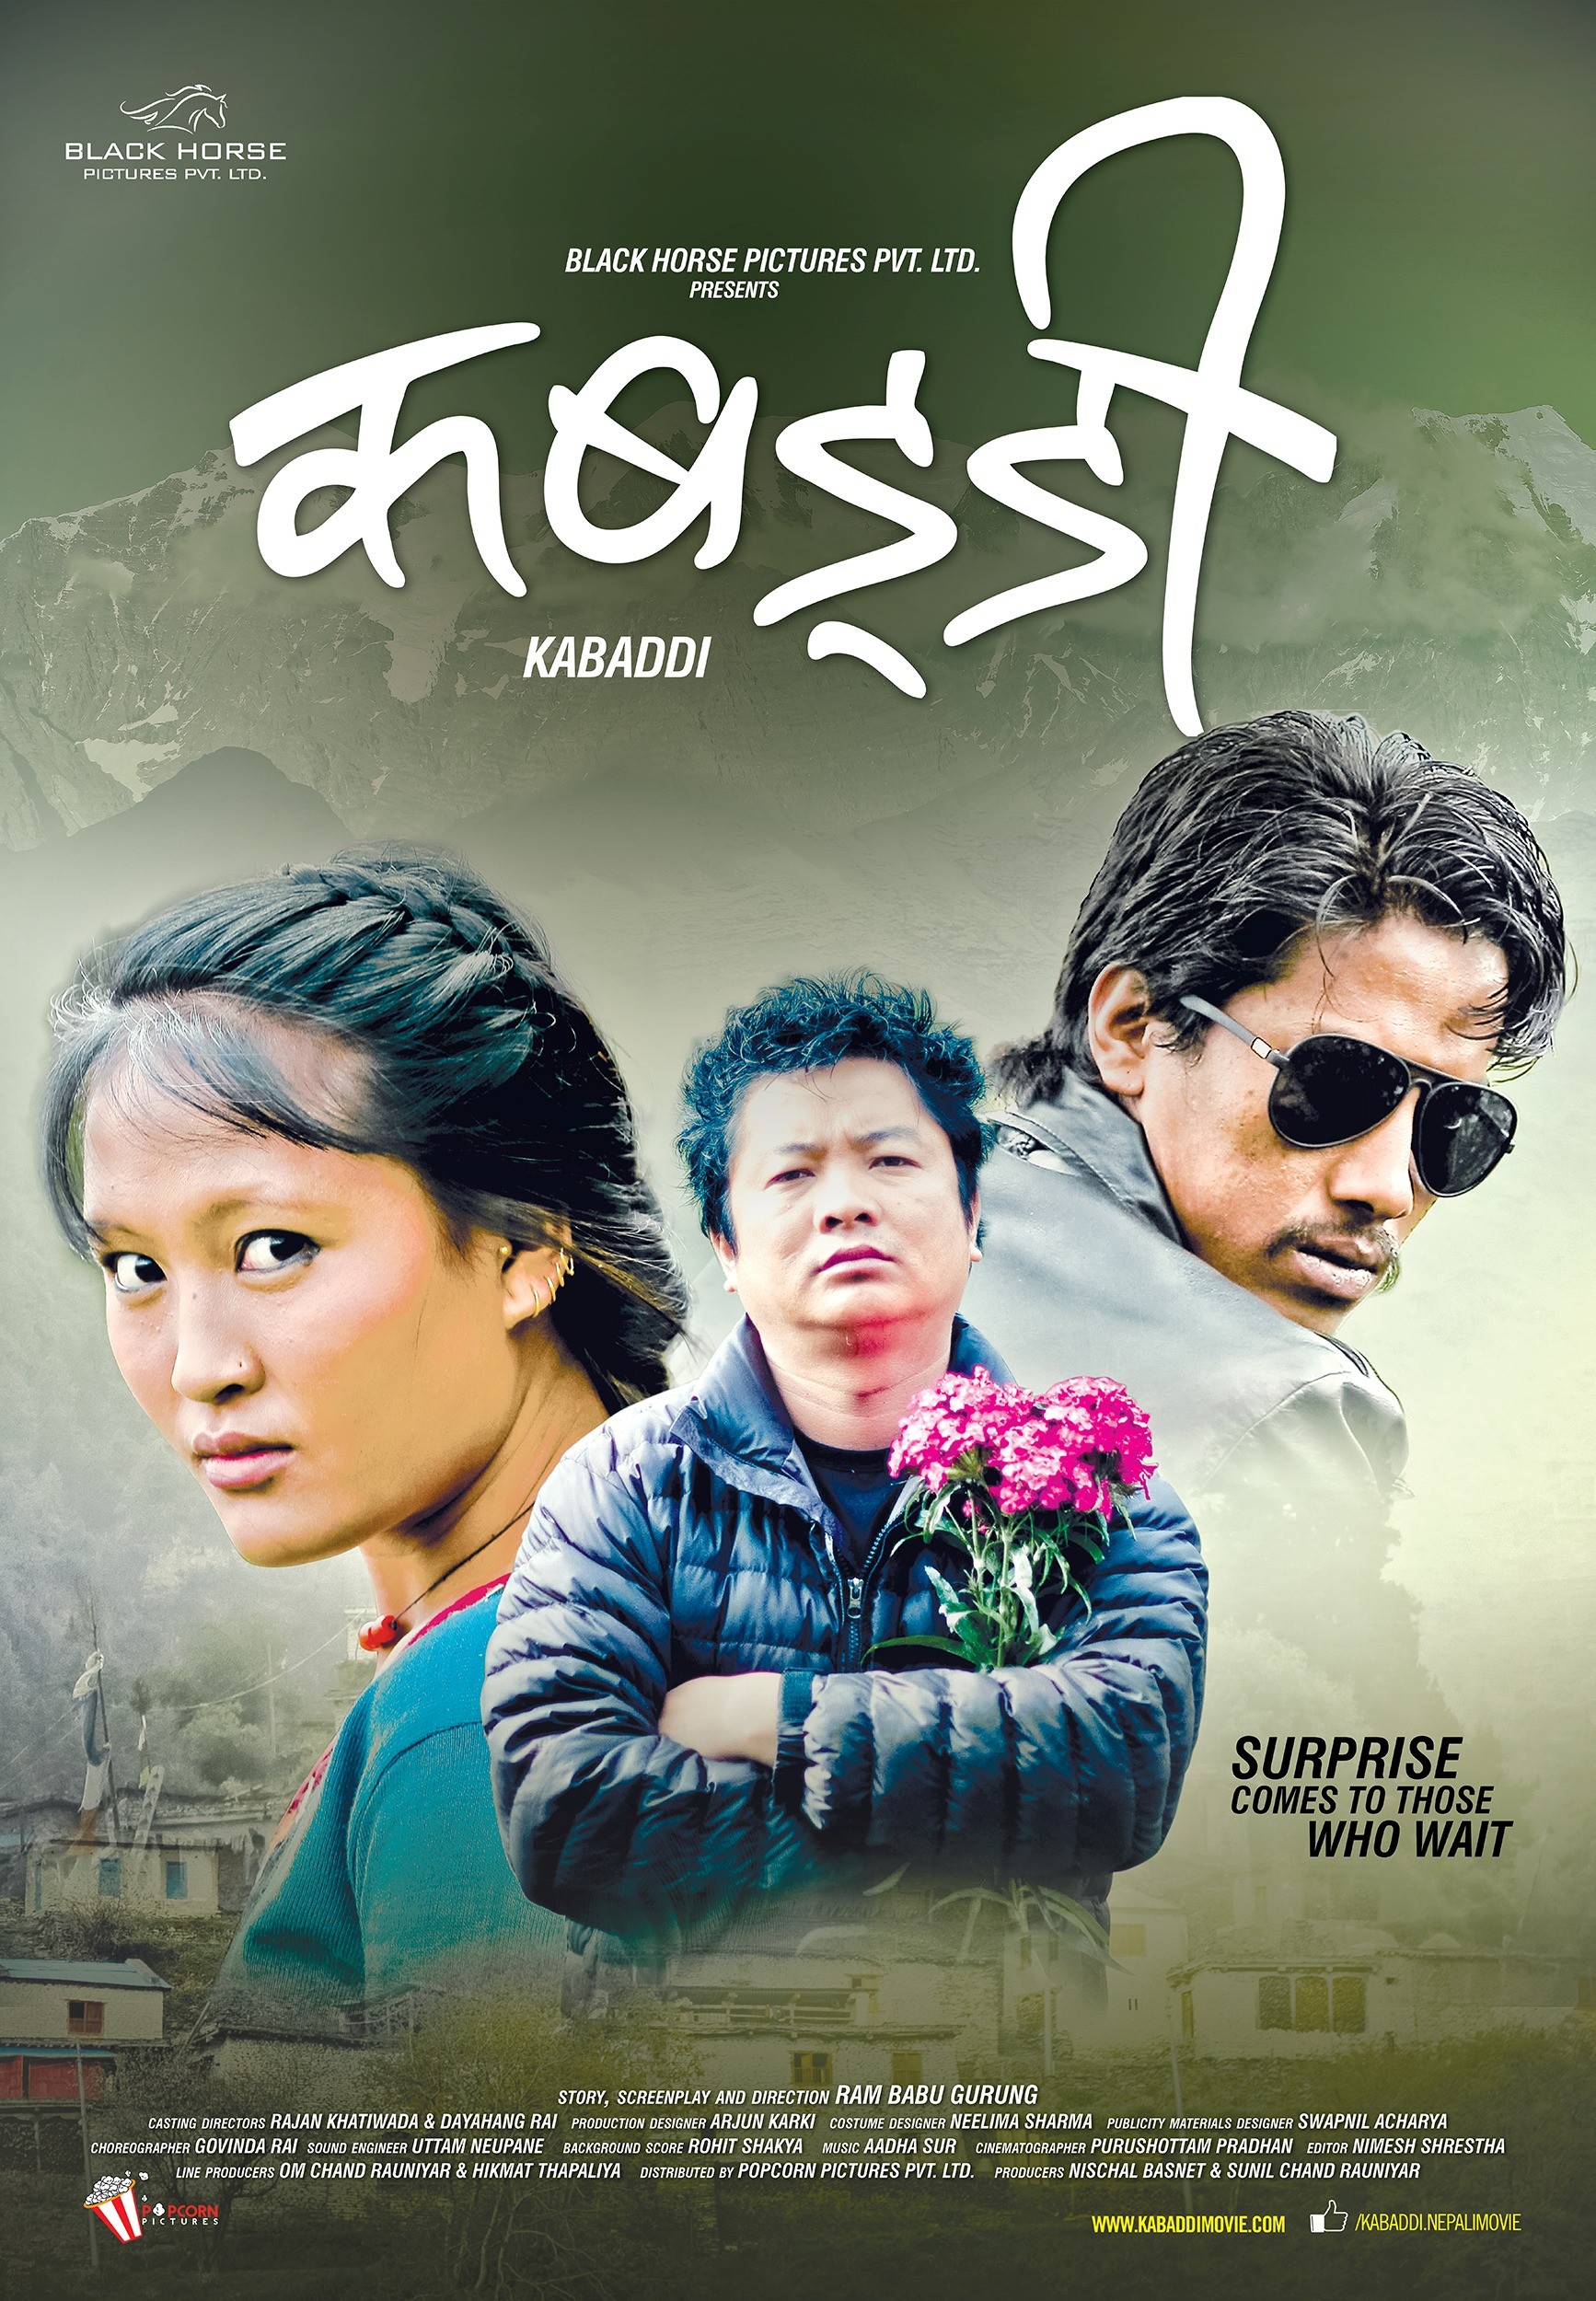 Mega Sized Movie Poster Image for Kabarddi (#4 of 6)